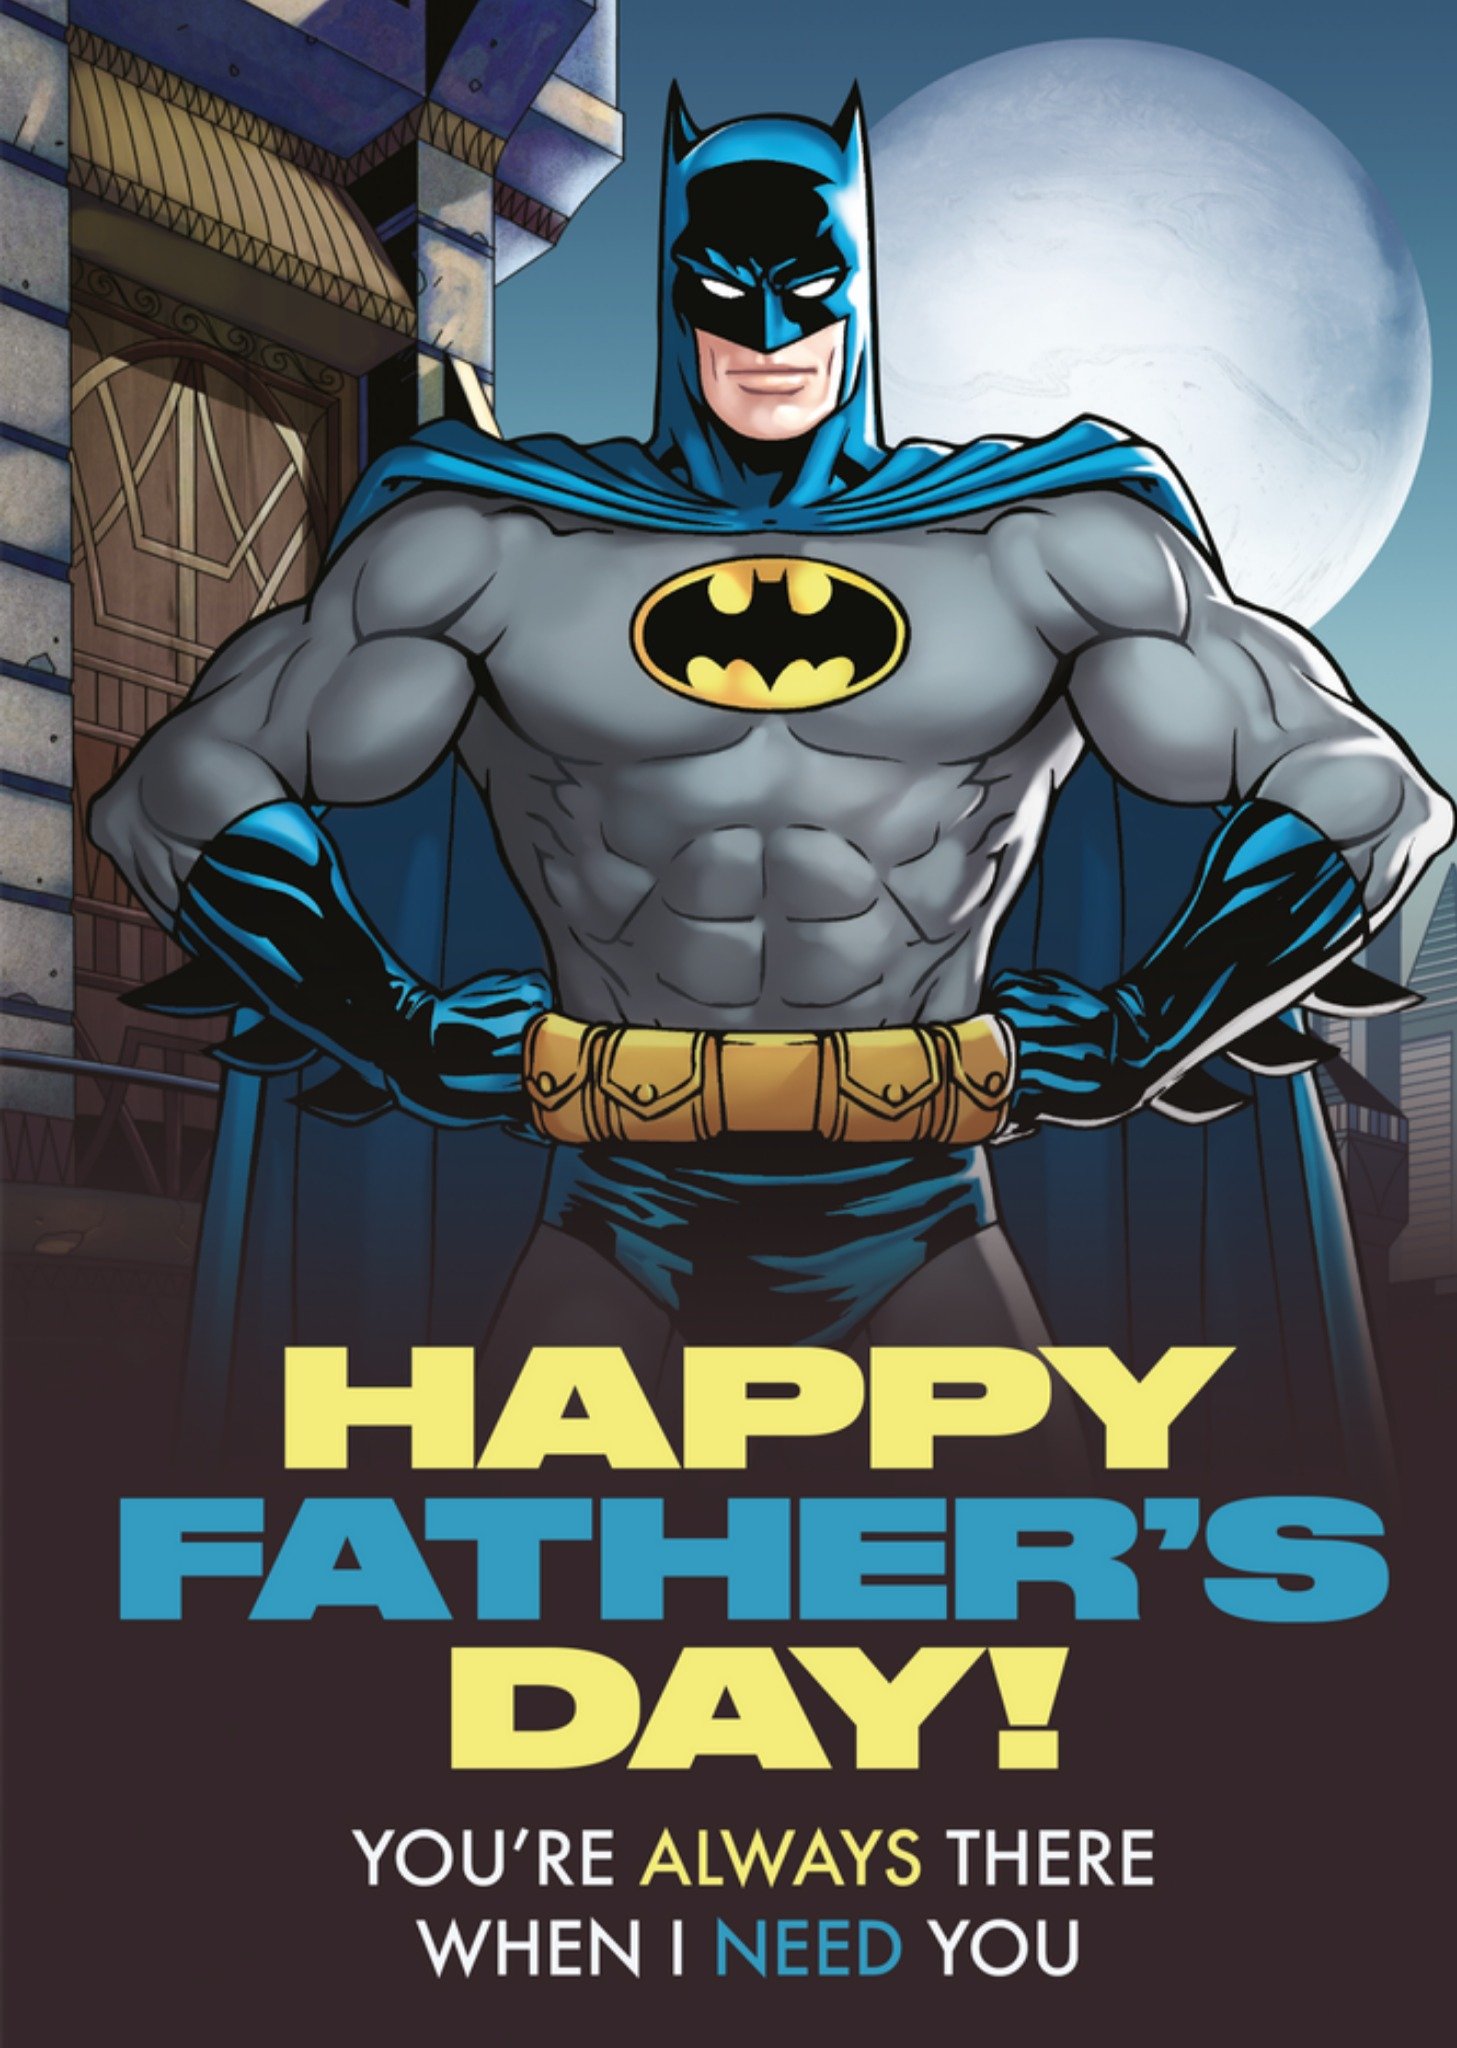 Warner Bros - Vaderdagkaart - Batman